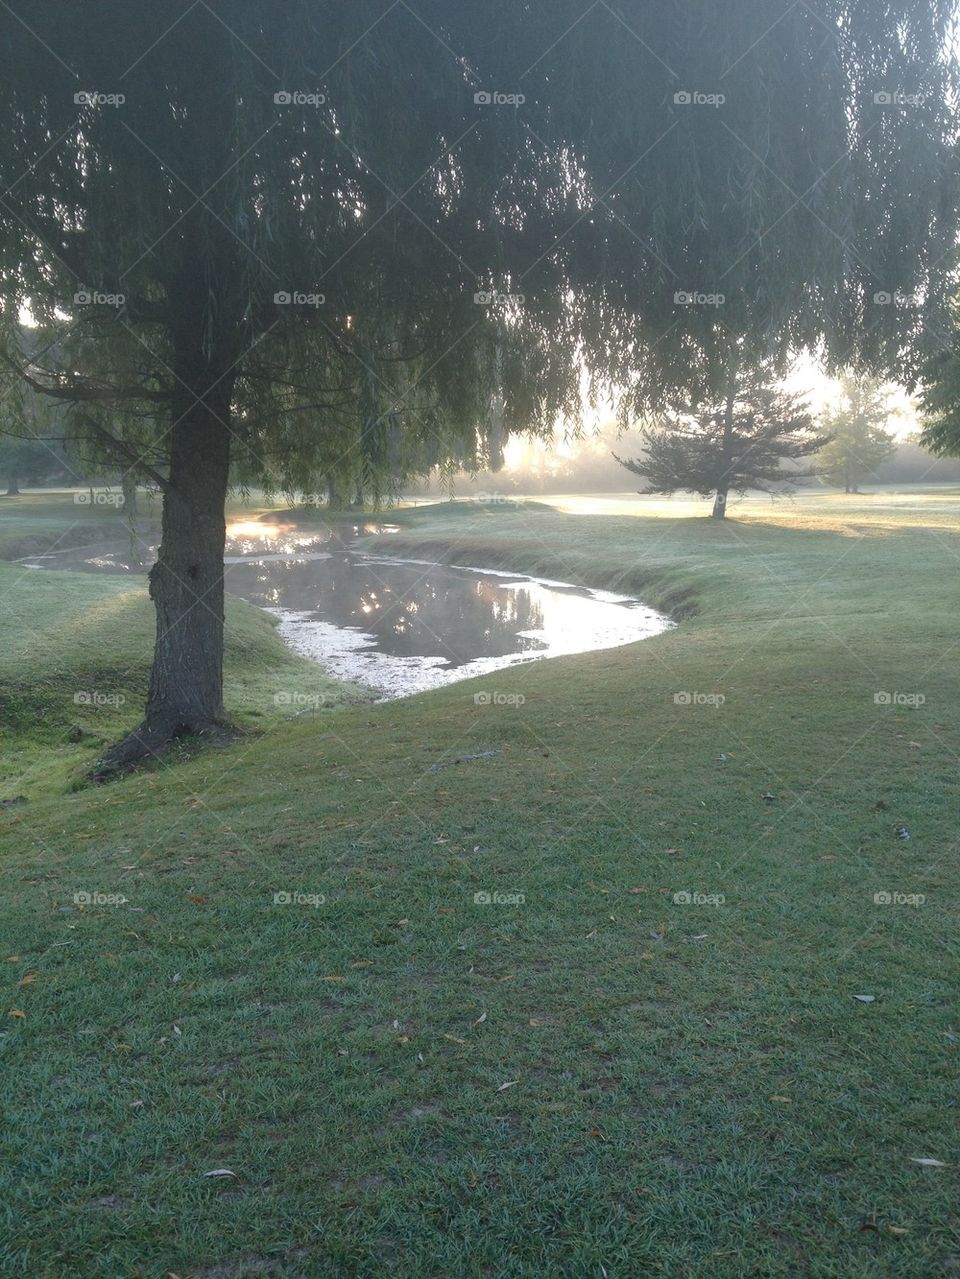 Golf at dawn